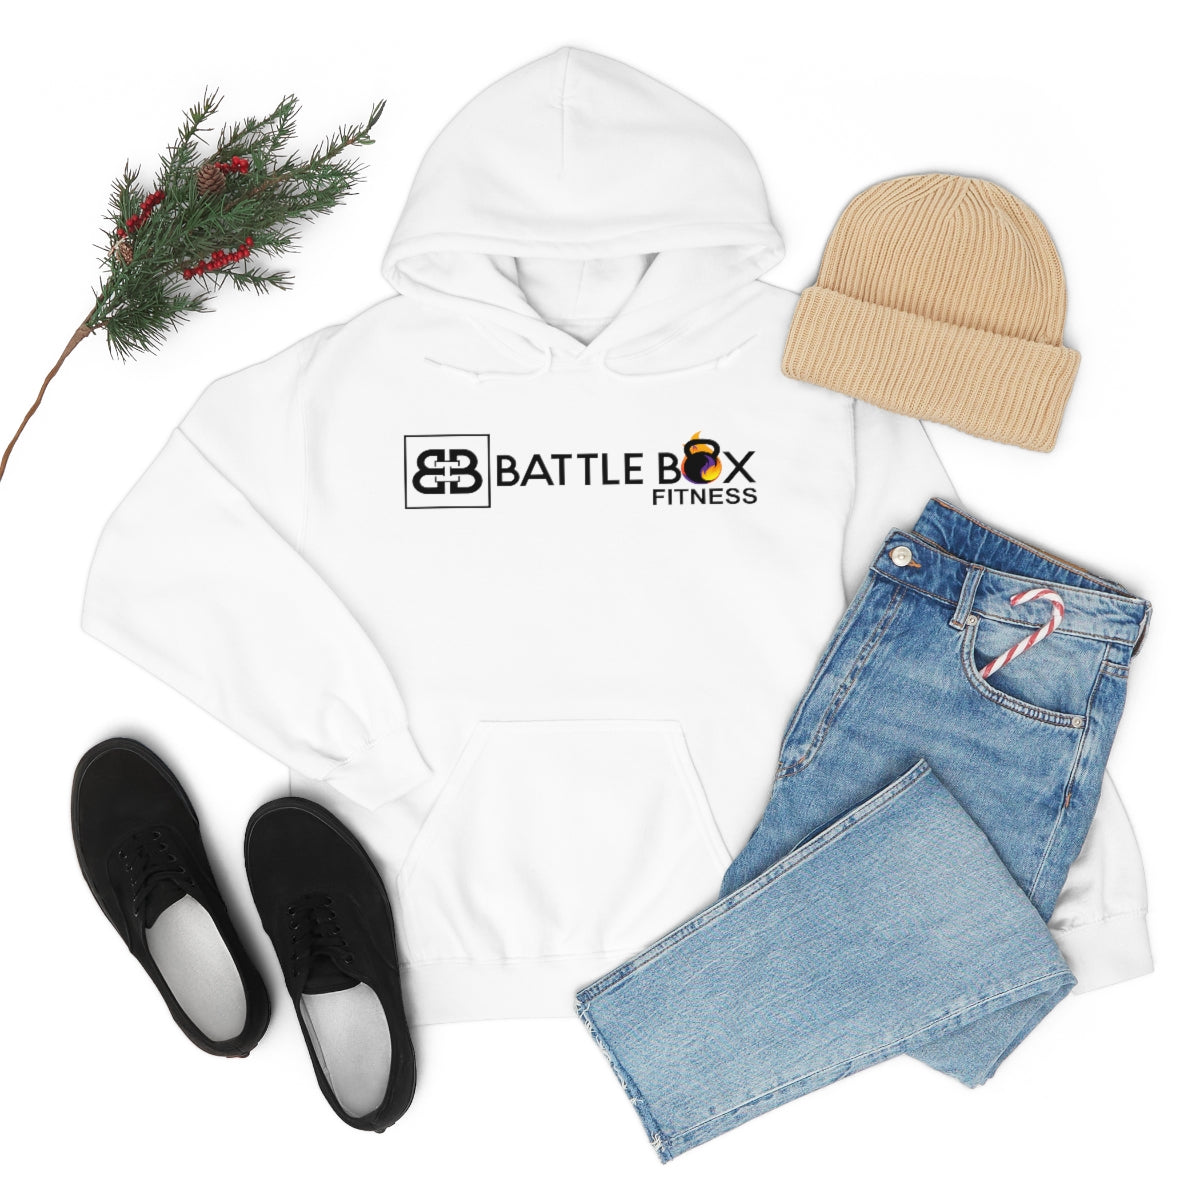 Battle Box Fitness Unisex Heavy Blend™ Hooded Sweatshirt